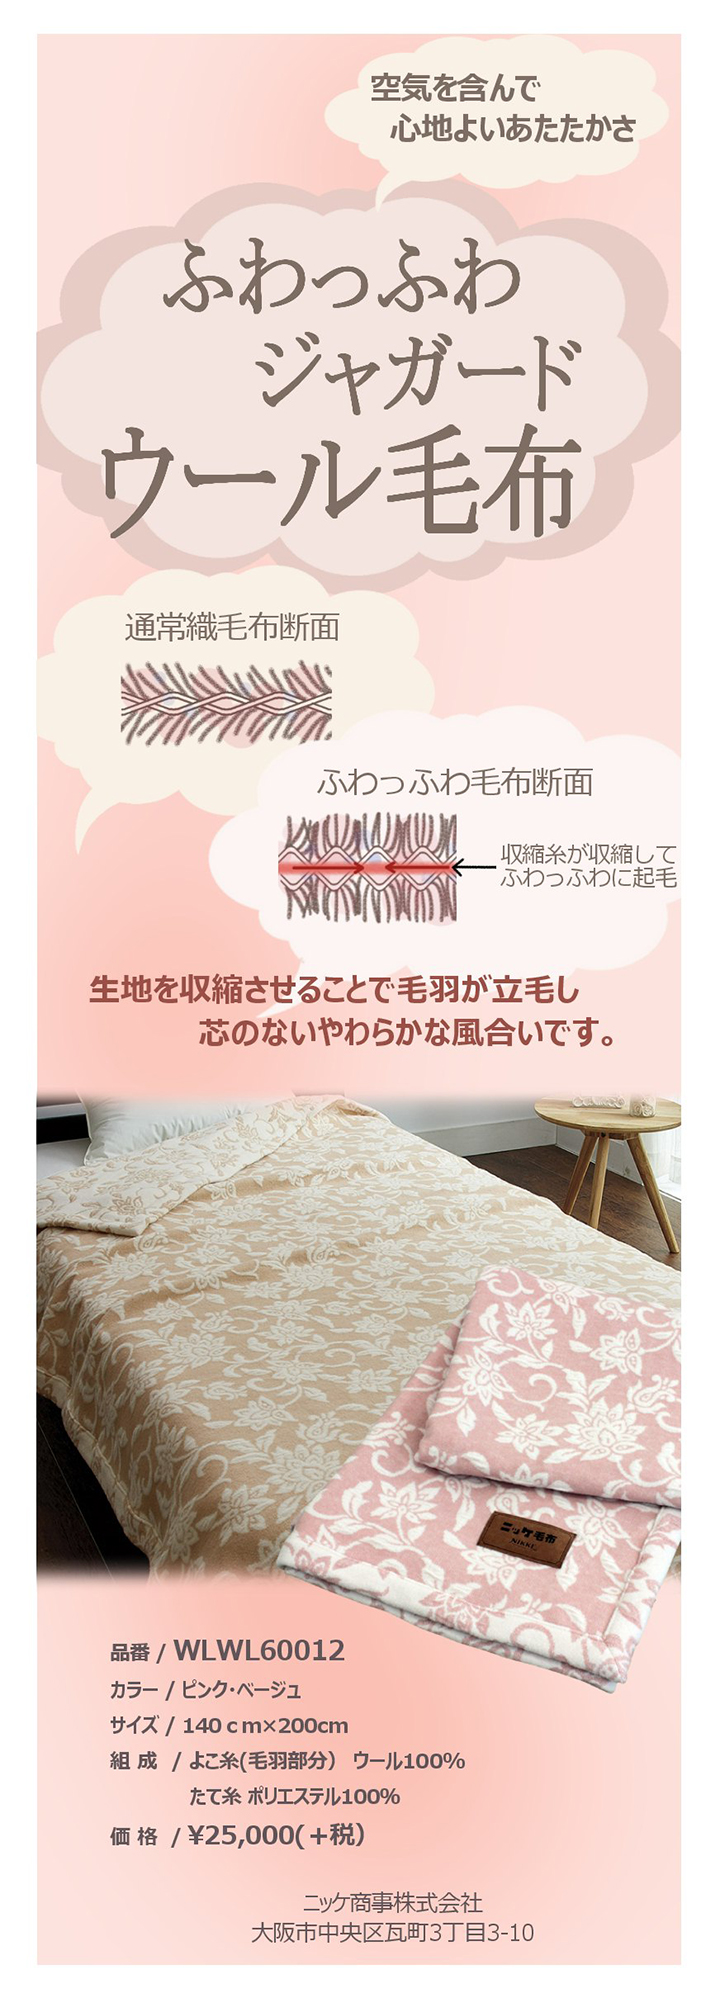 多慶屋公式サイト / 日本製ニッケふわっふわボリュームウール毛布